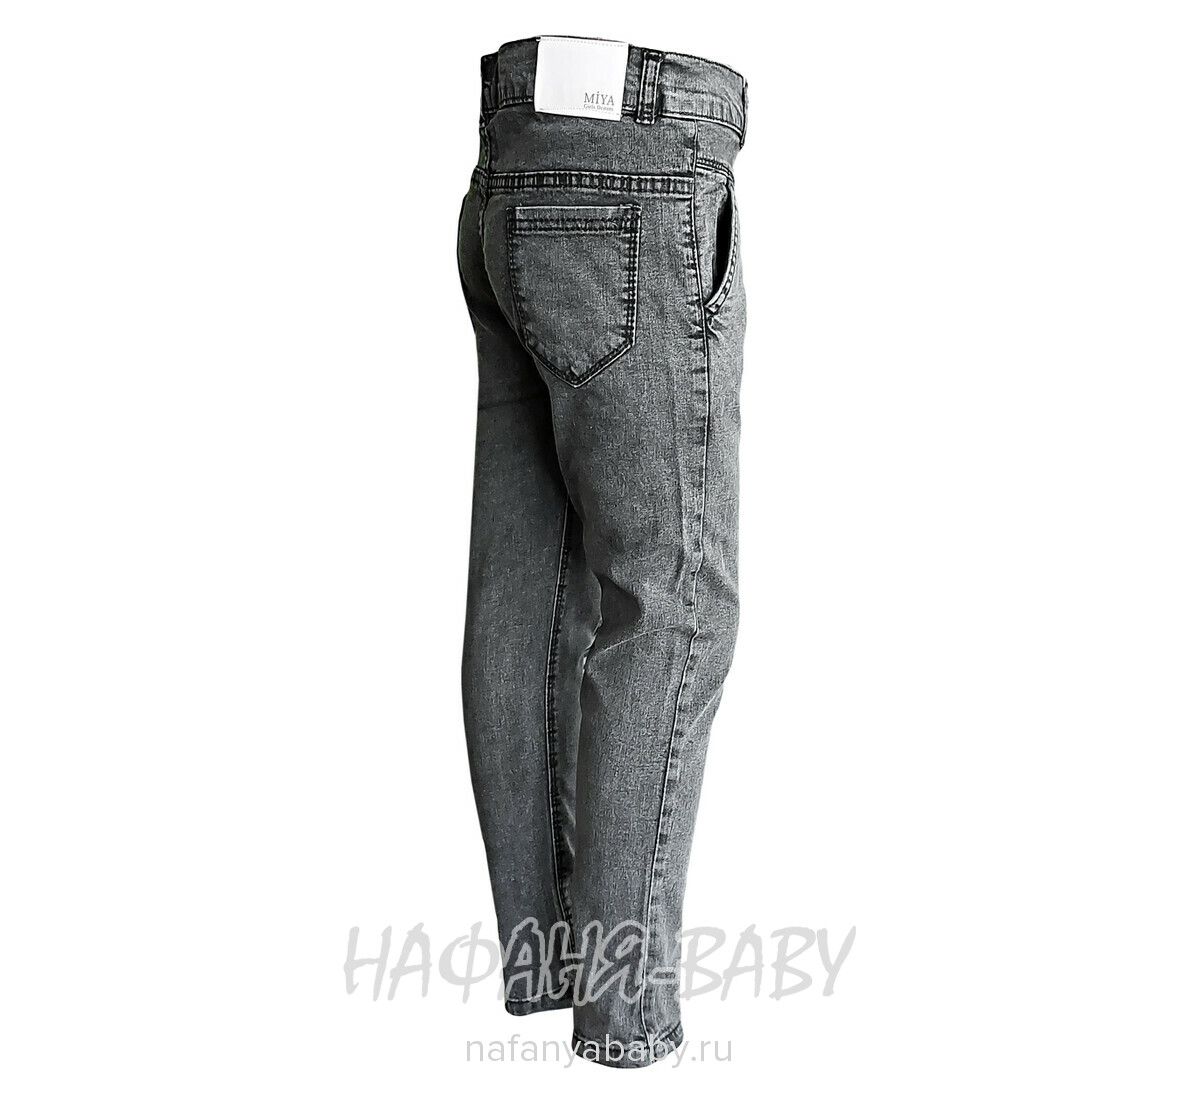 Подростковые джинсы MIYA арт: 8142 для девочки  11-15 лет, цвет черный, оптом Турция